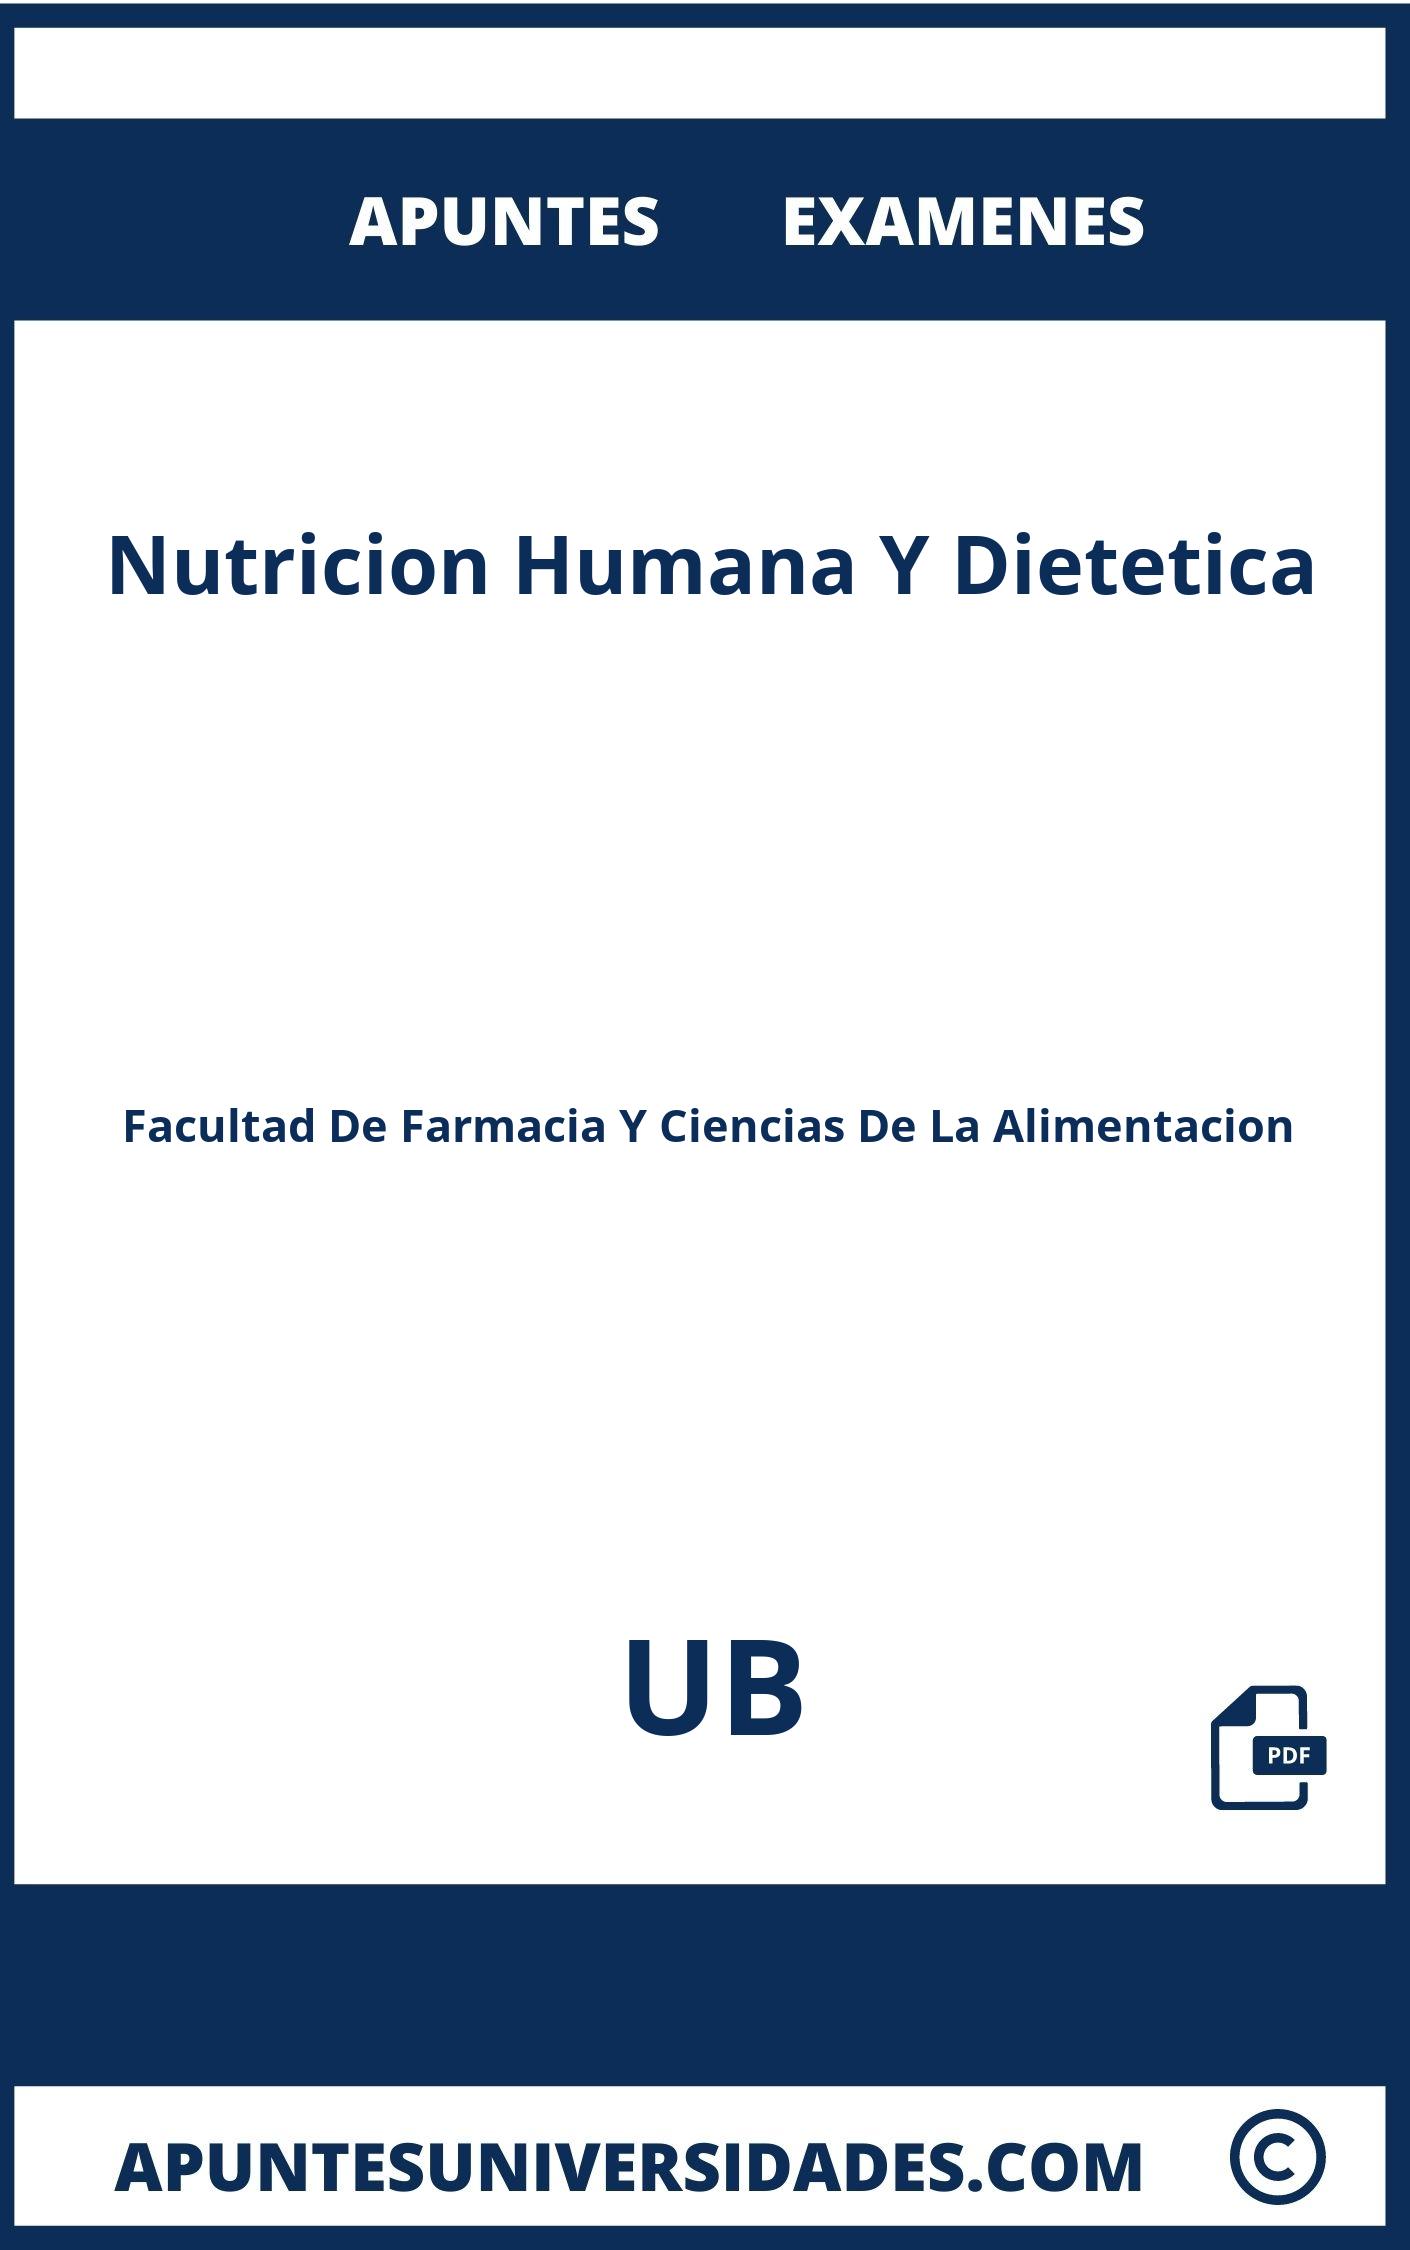 Examenes y Apuntes de Nutricion Humana Y Dietetica UB